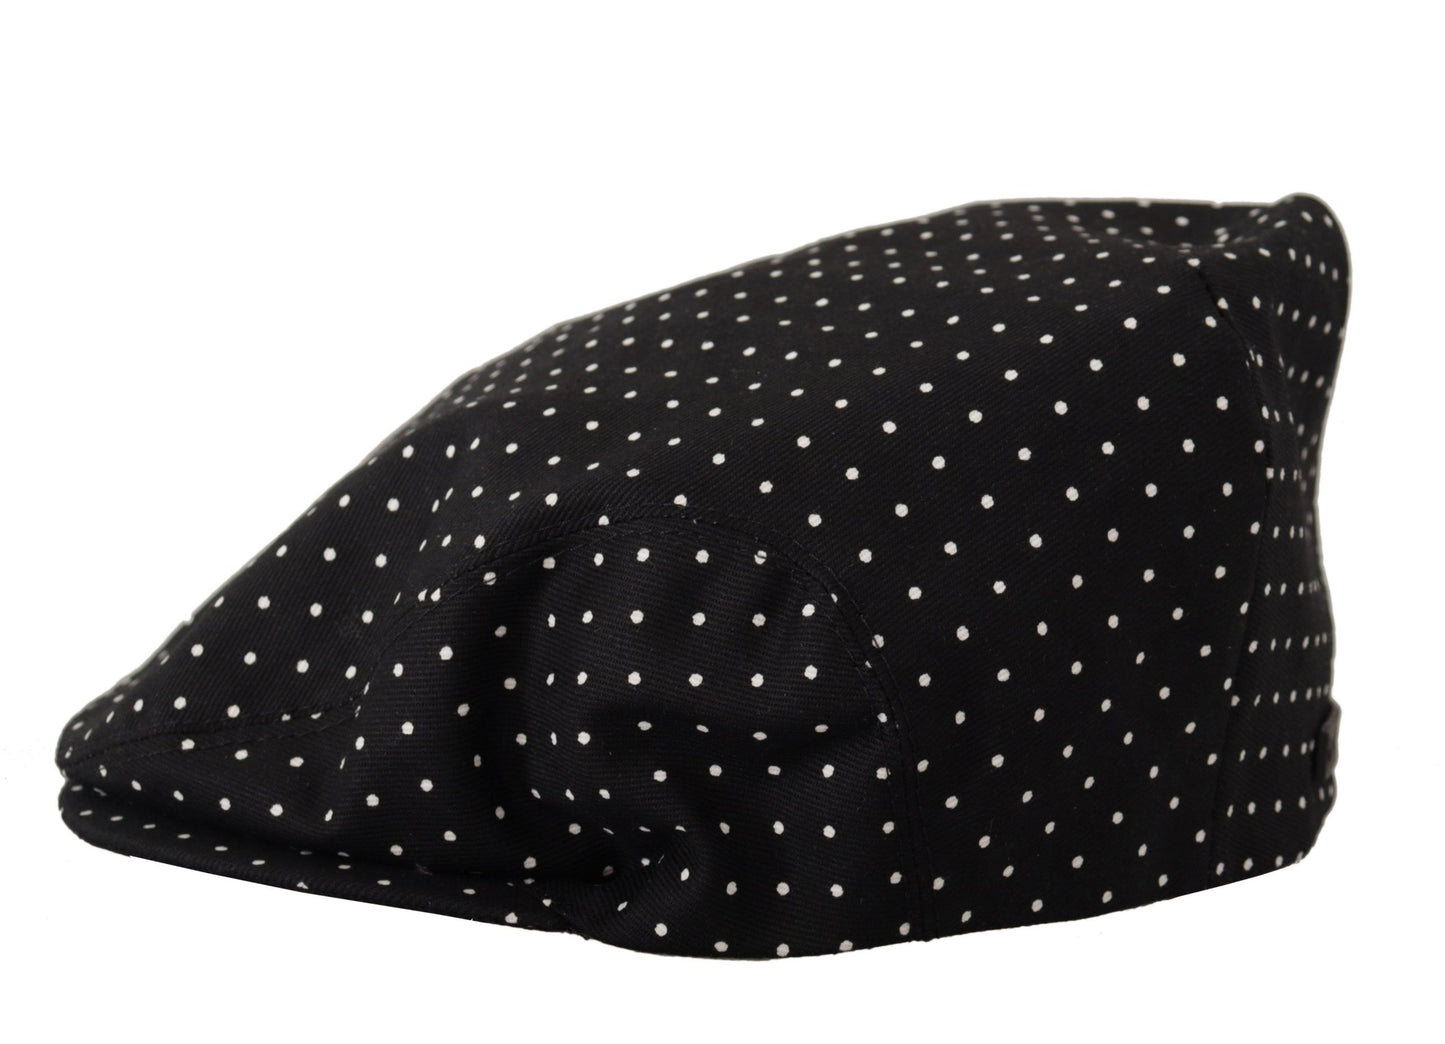 Dolce & Gabbana Classic Polka Dot Newsboy Hat